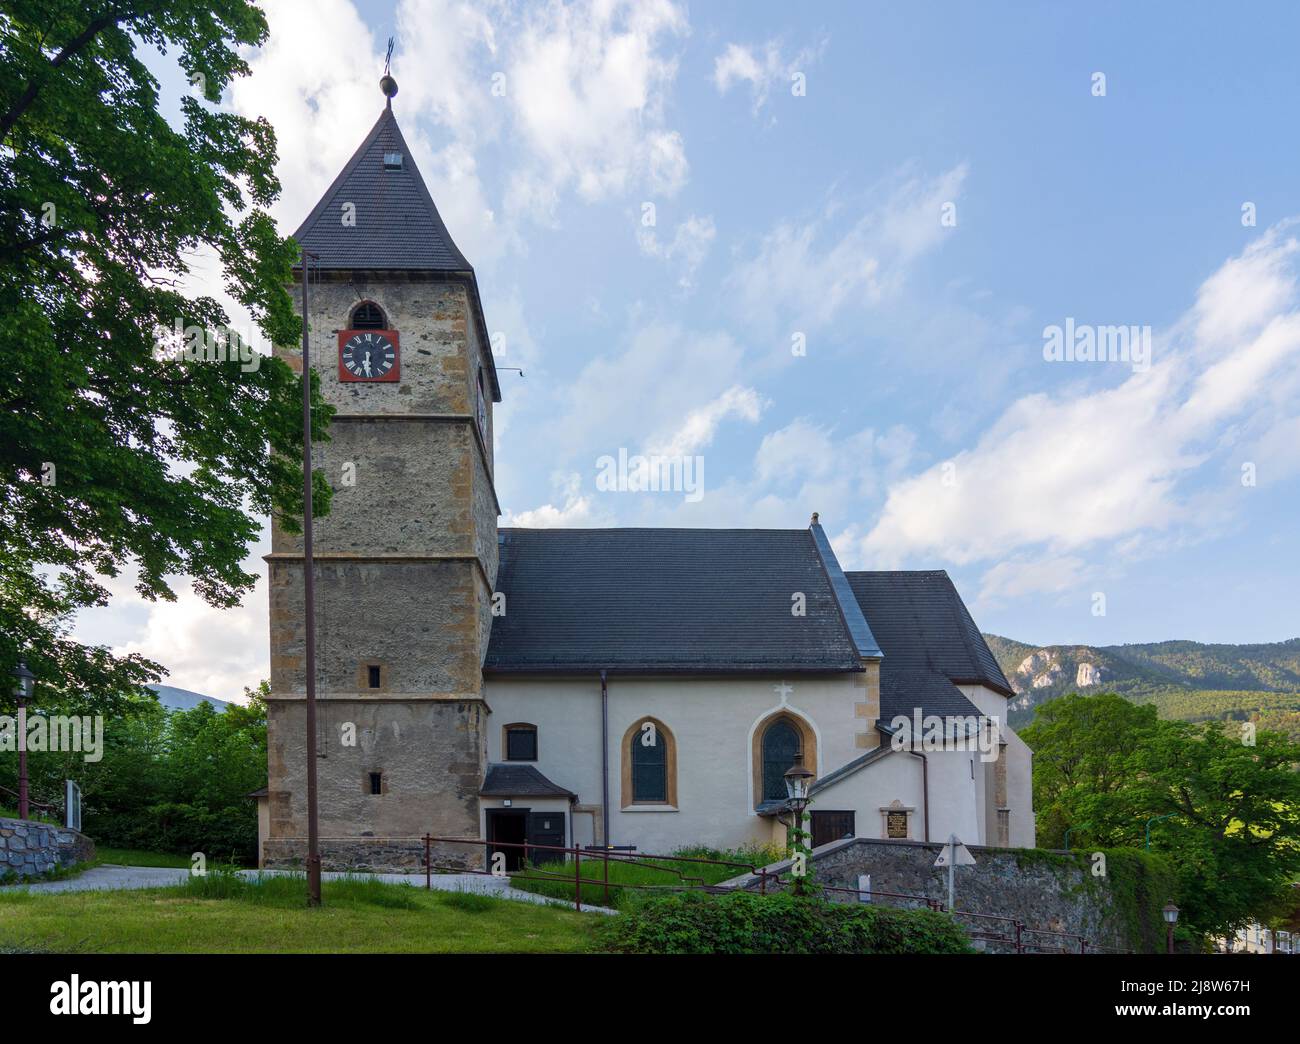 Payerbach: church Payerbach in Wiener Alpen, Alps, Niederösterreich, Lower Austria, Austria Stock Photo